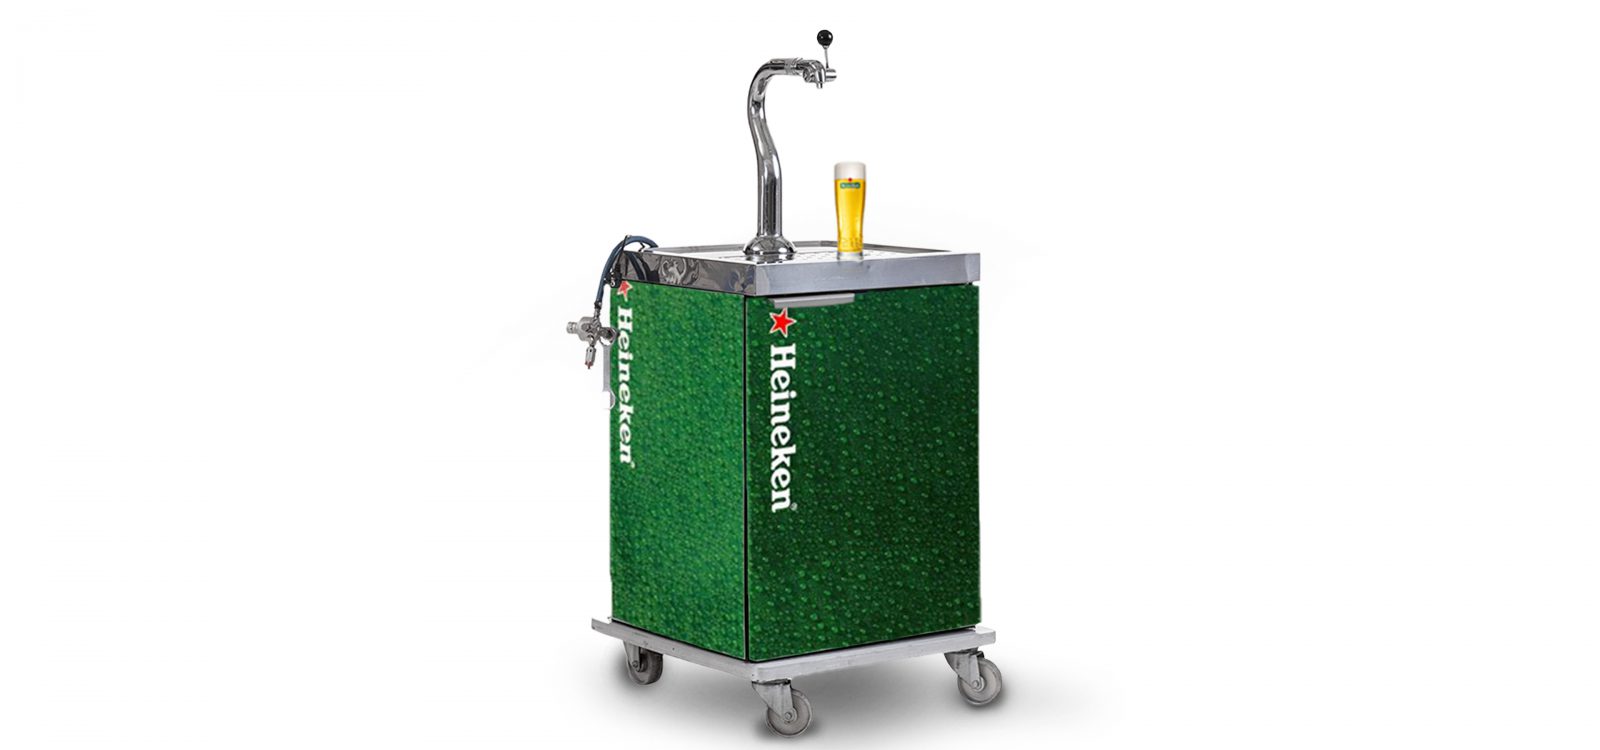 Heineken David Biertap, biertapsysteem, tapsysteem